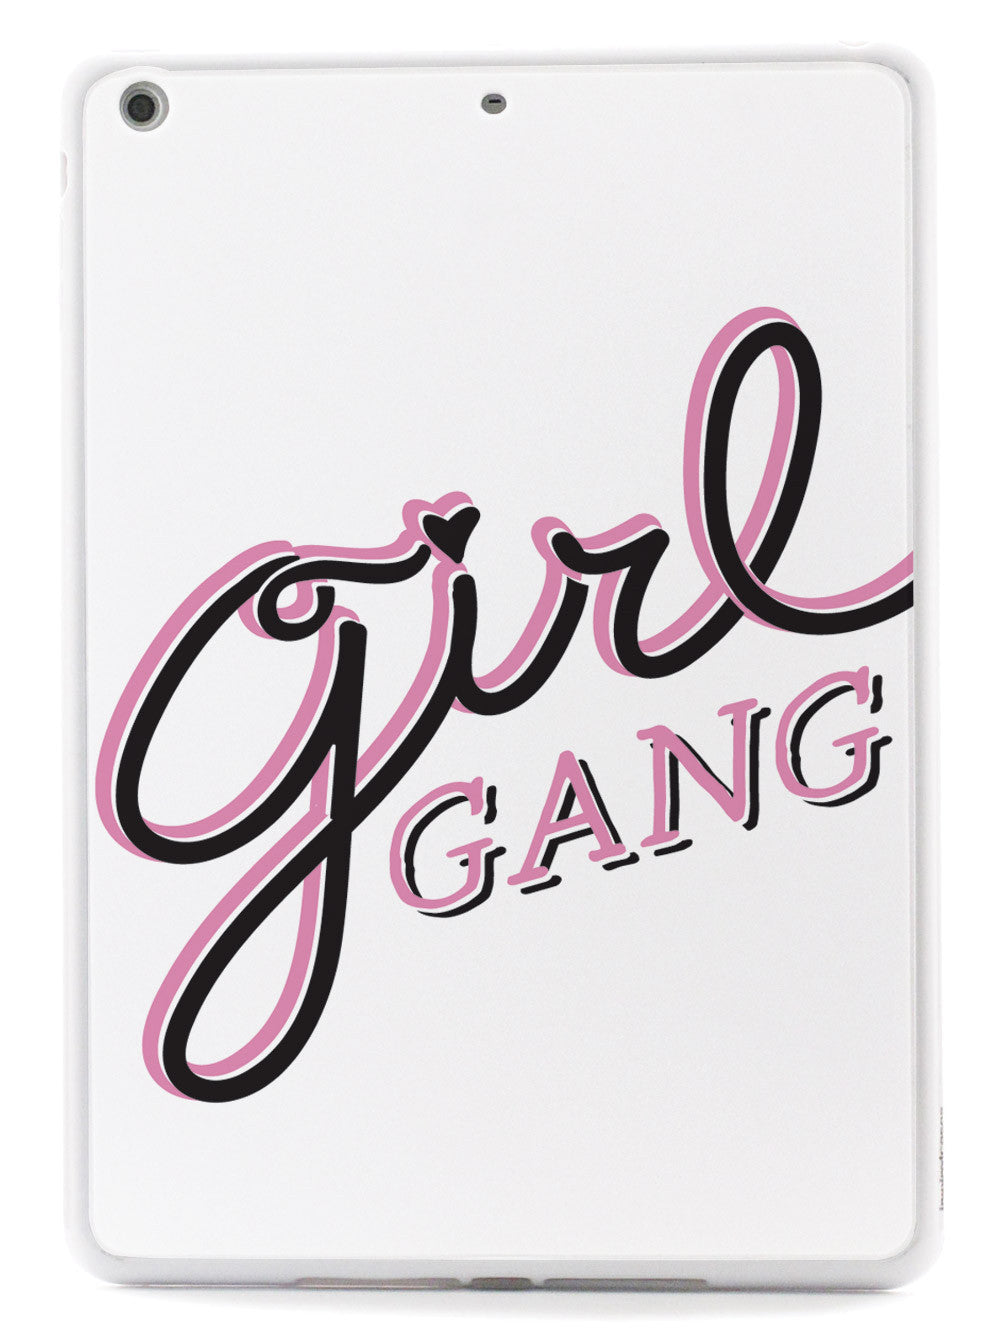 Girl Gang - White Case